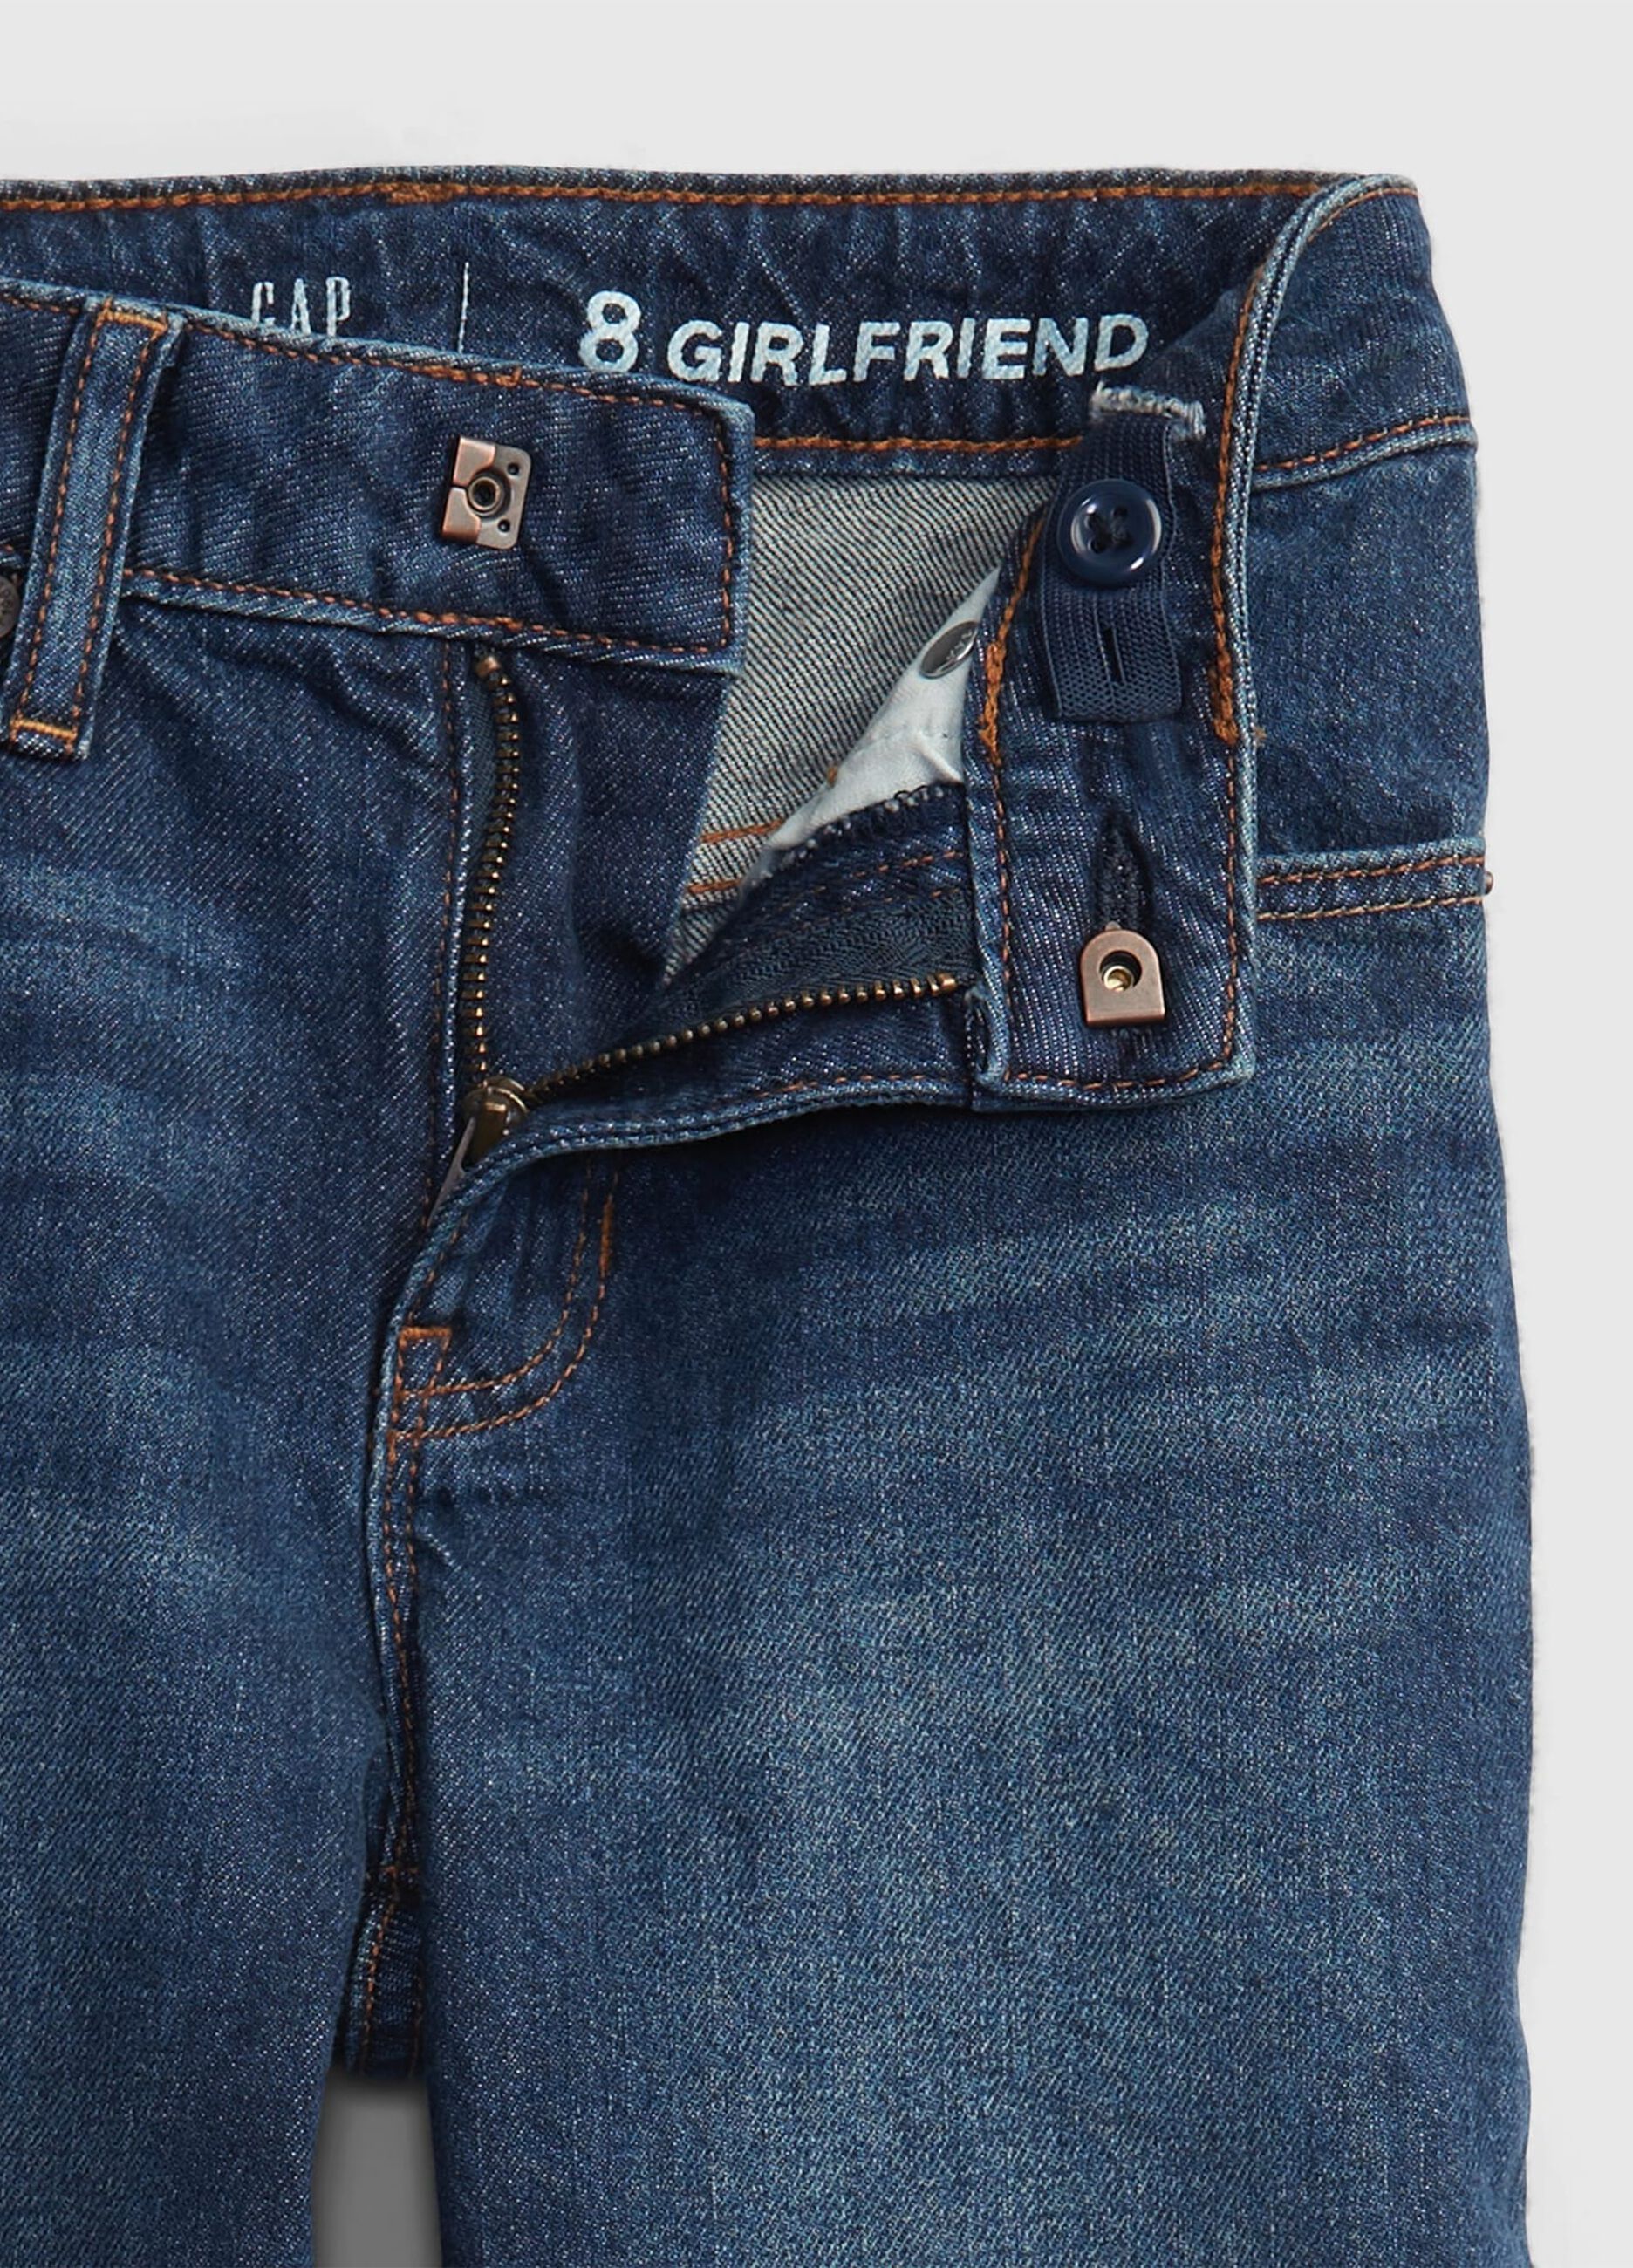 Jeans girlfriend